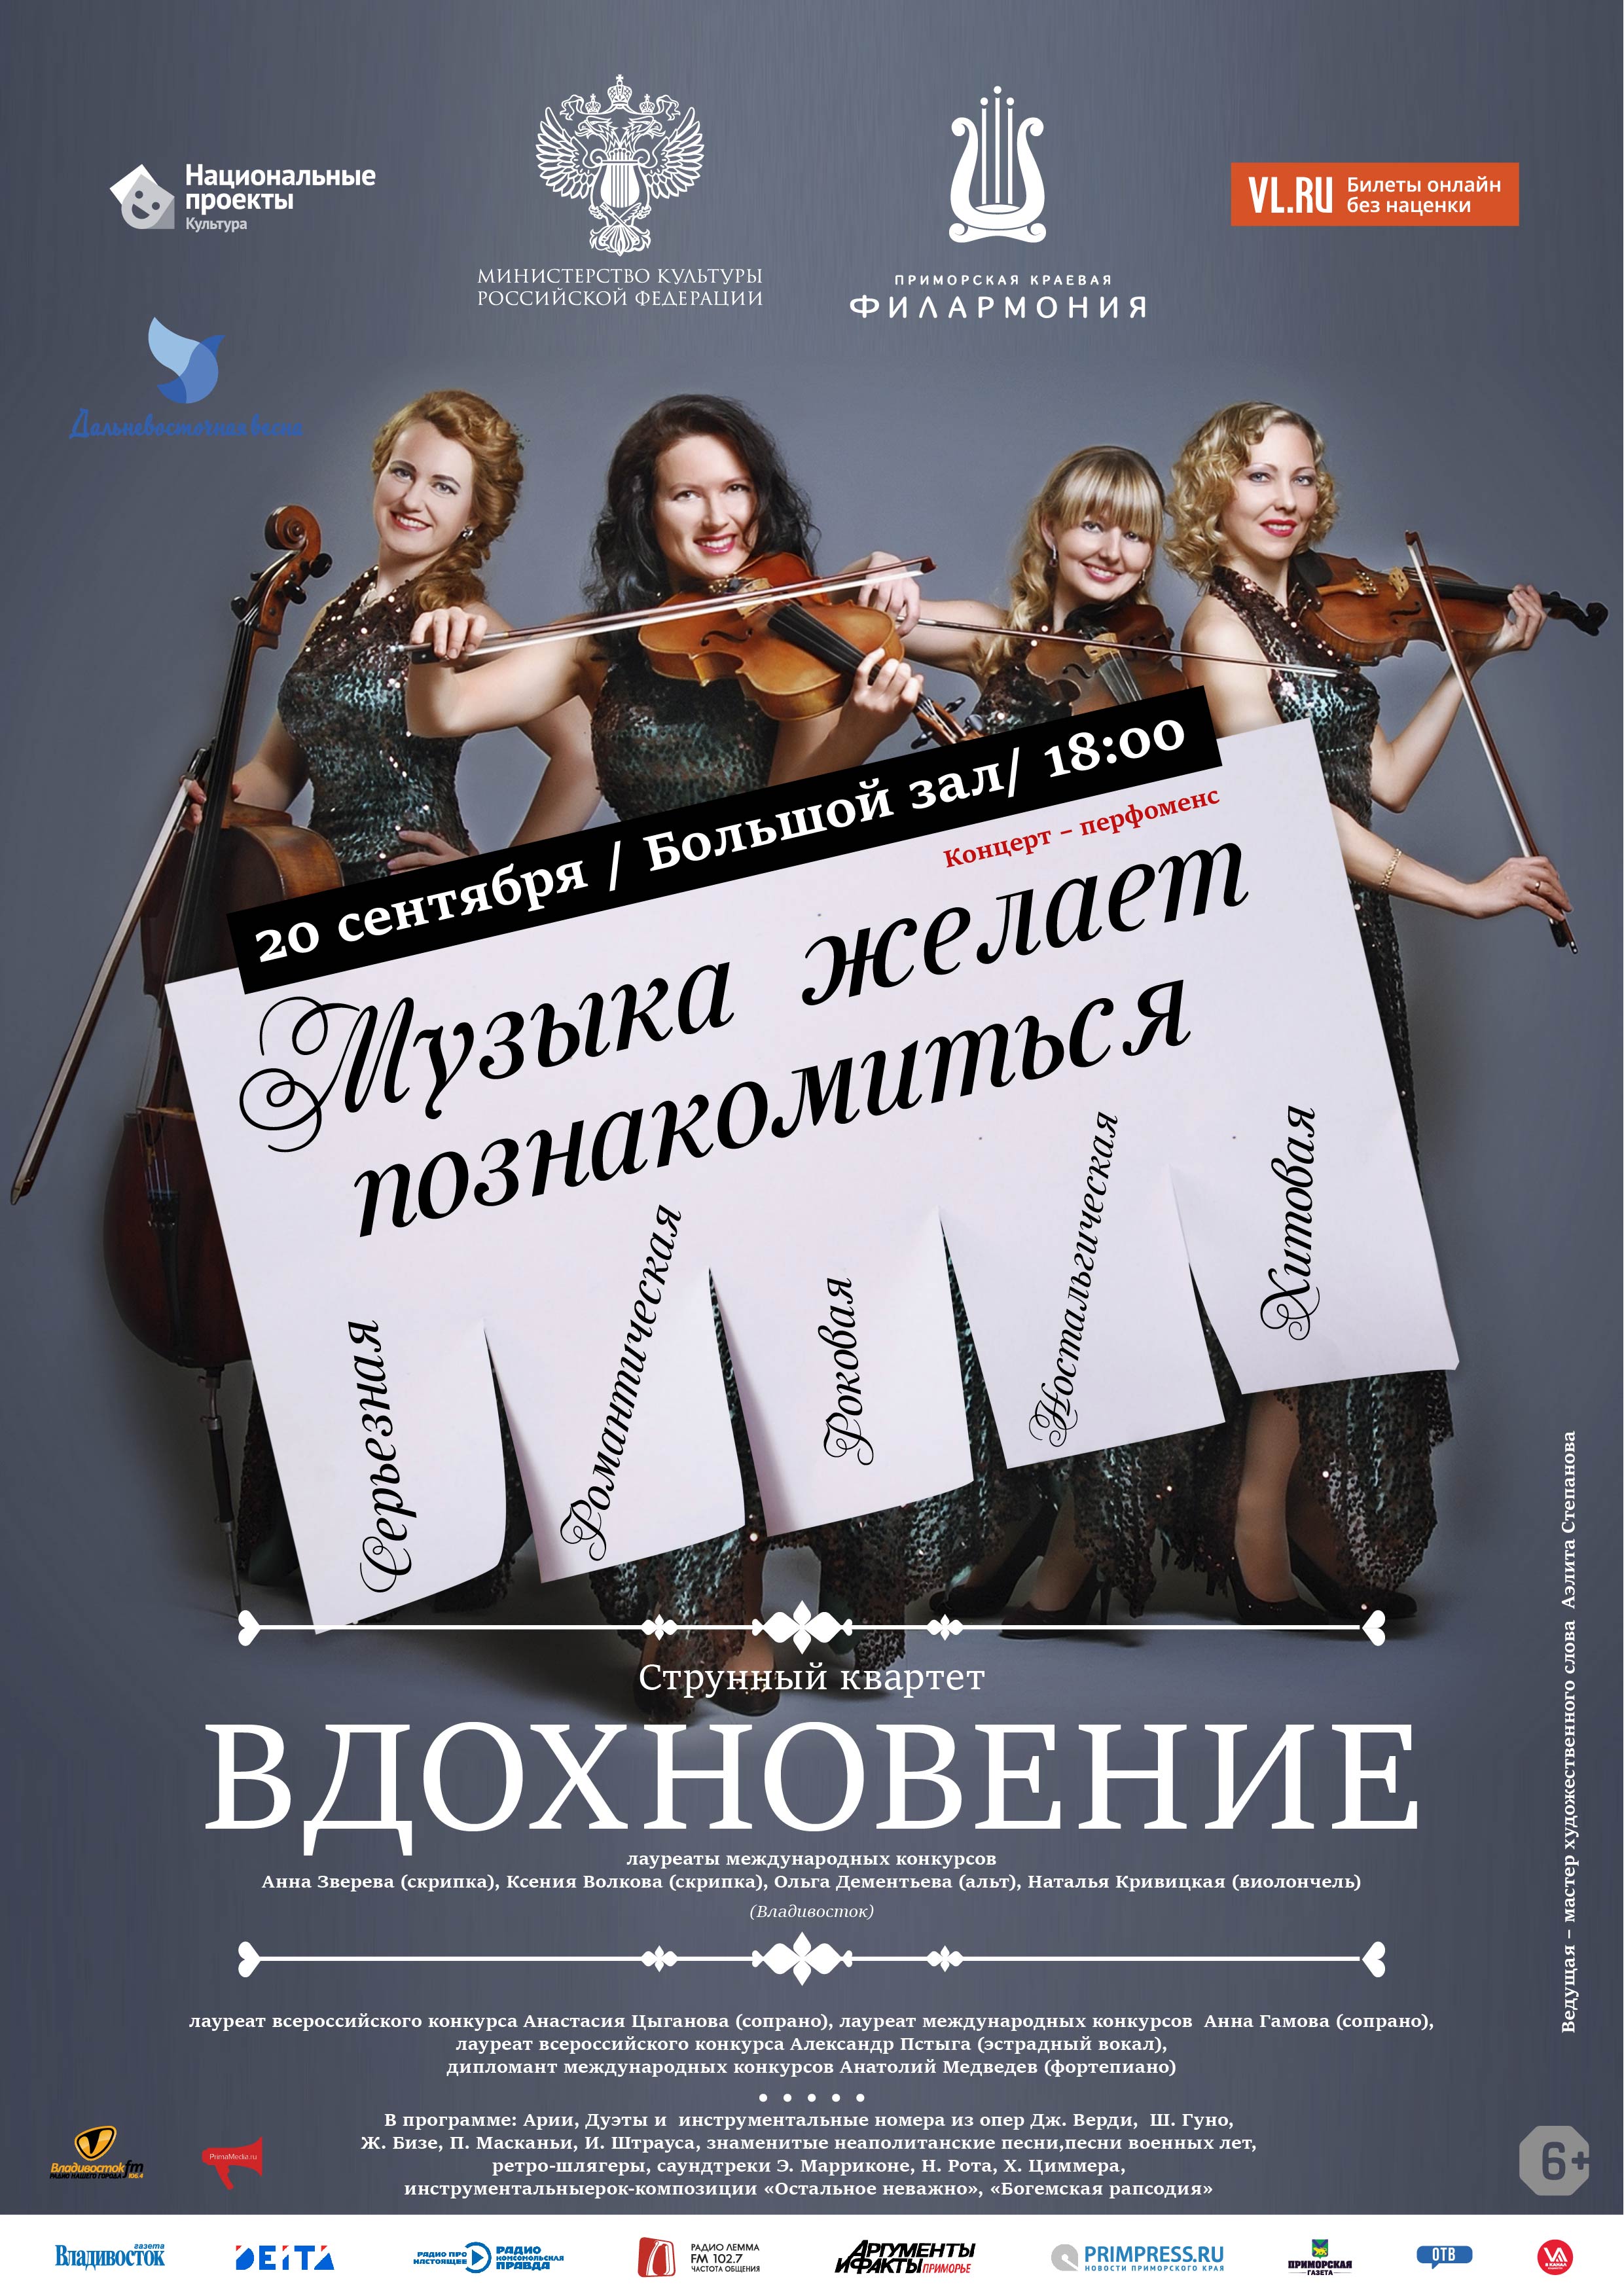 20 сентября XXIX Фестиваля классической музыки «Дальневосточная Весна»Концертная программа «Музыка желает познакомиться»